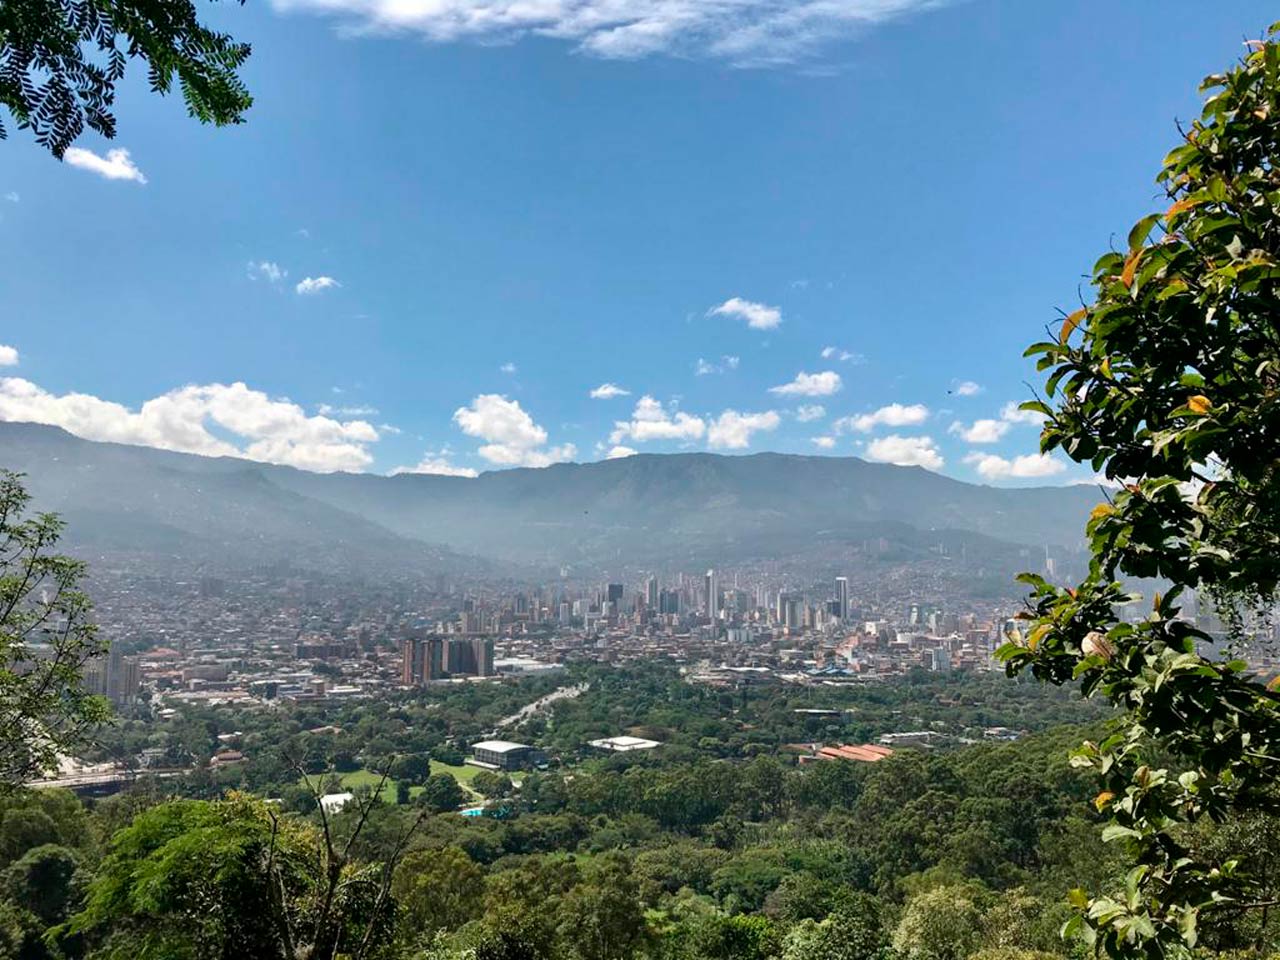 La Alcaldía de Medellín hace recomendaciones para proteger las reservas naturales debido al incremento de visitantes en inicio de año